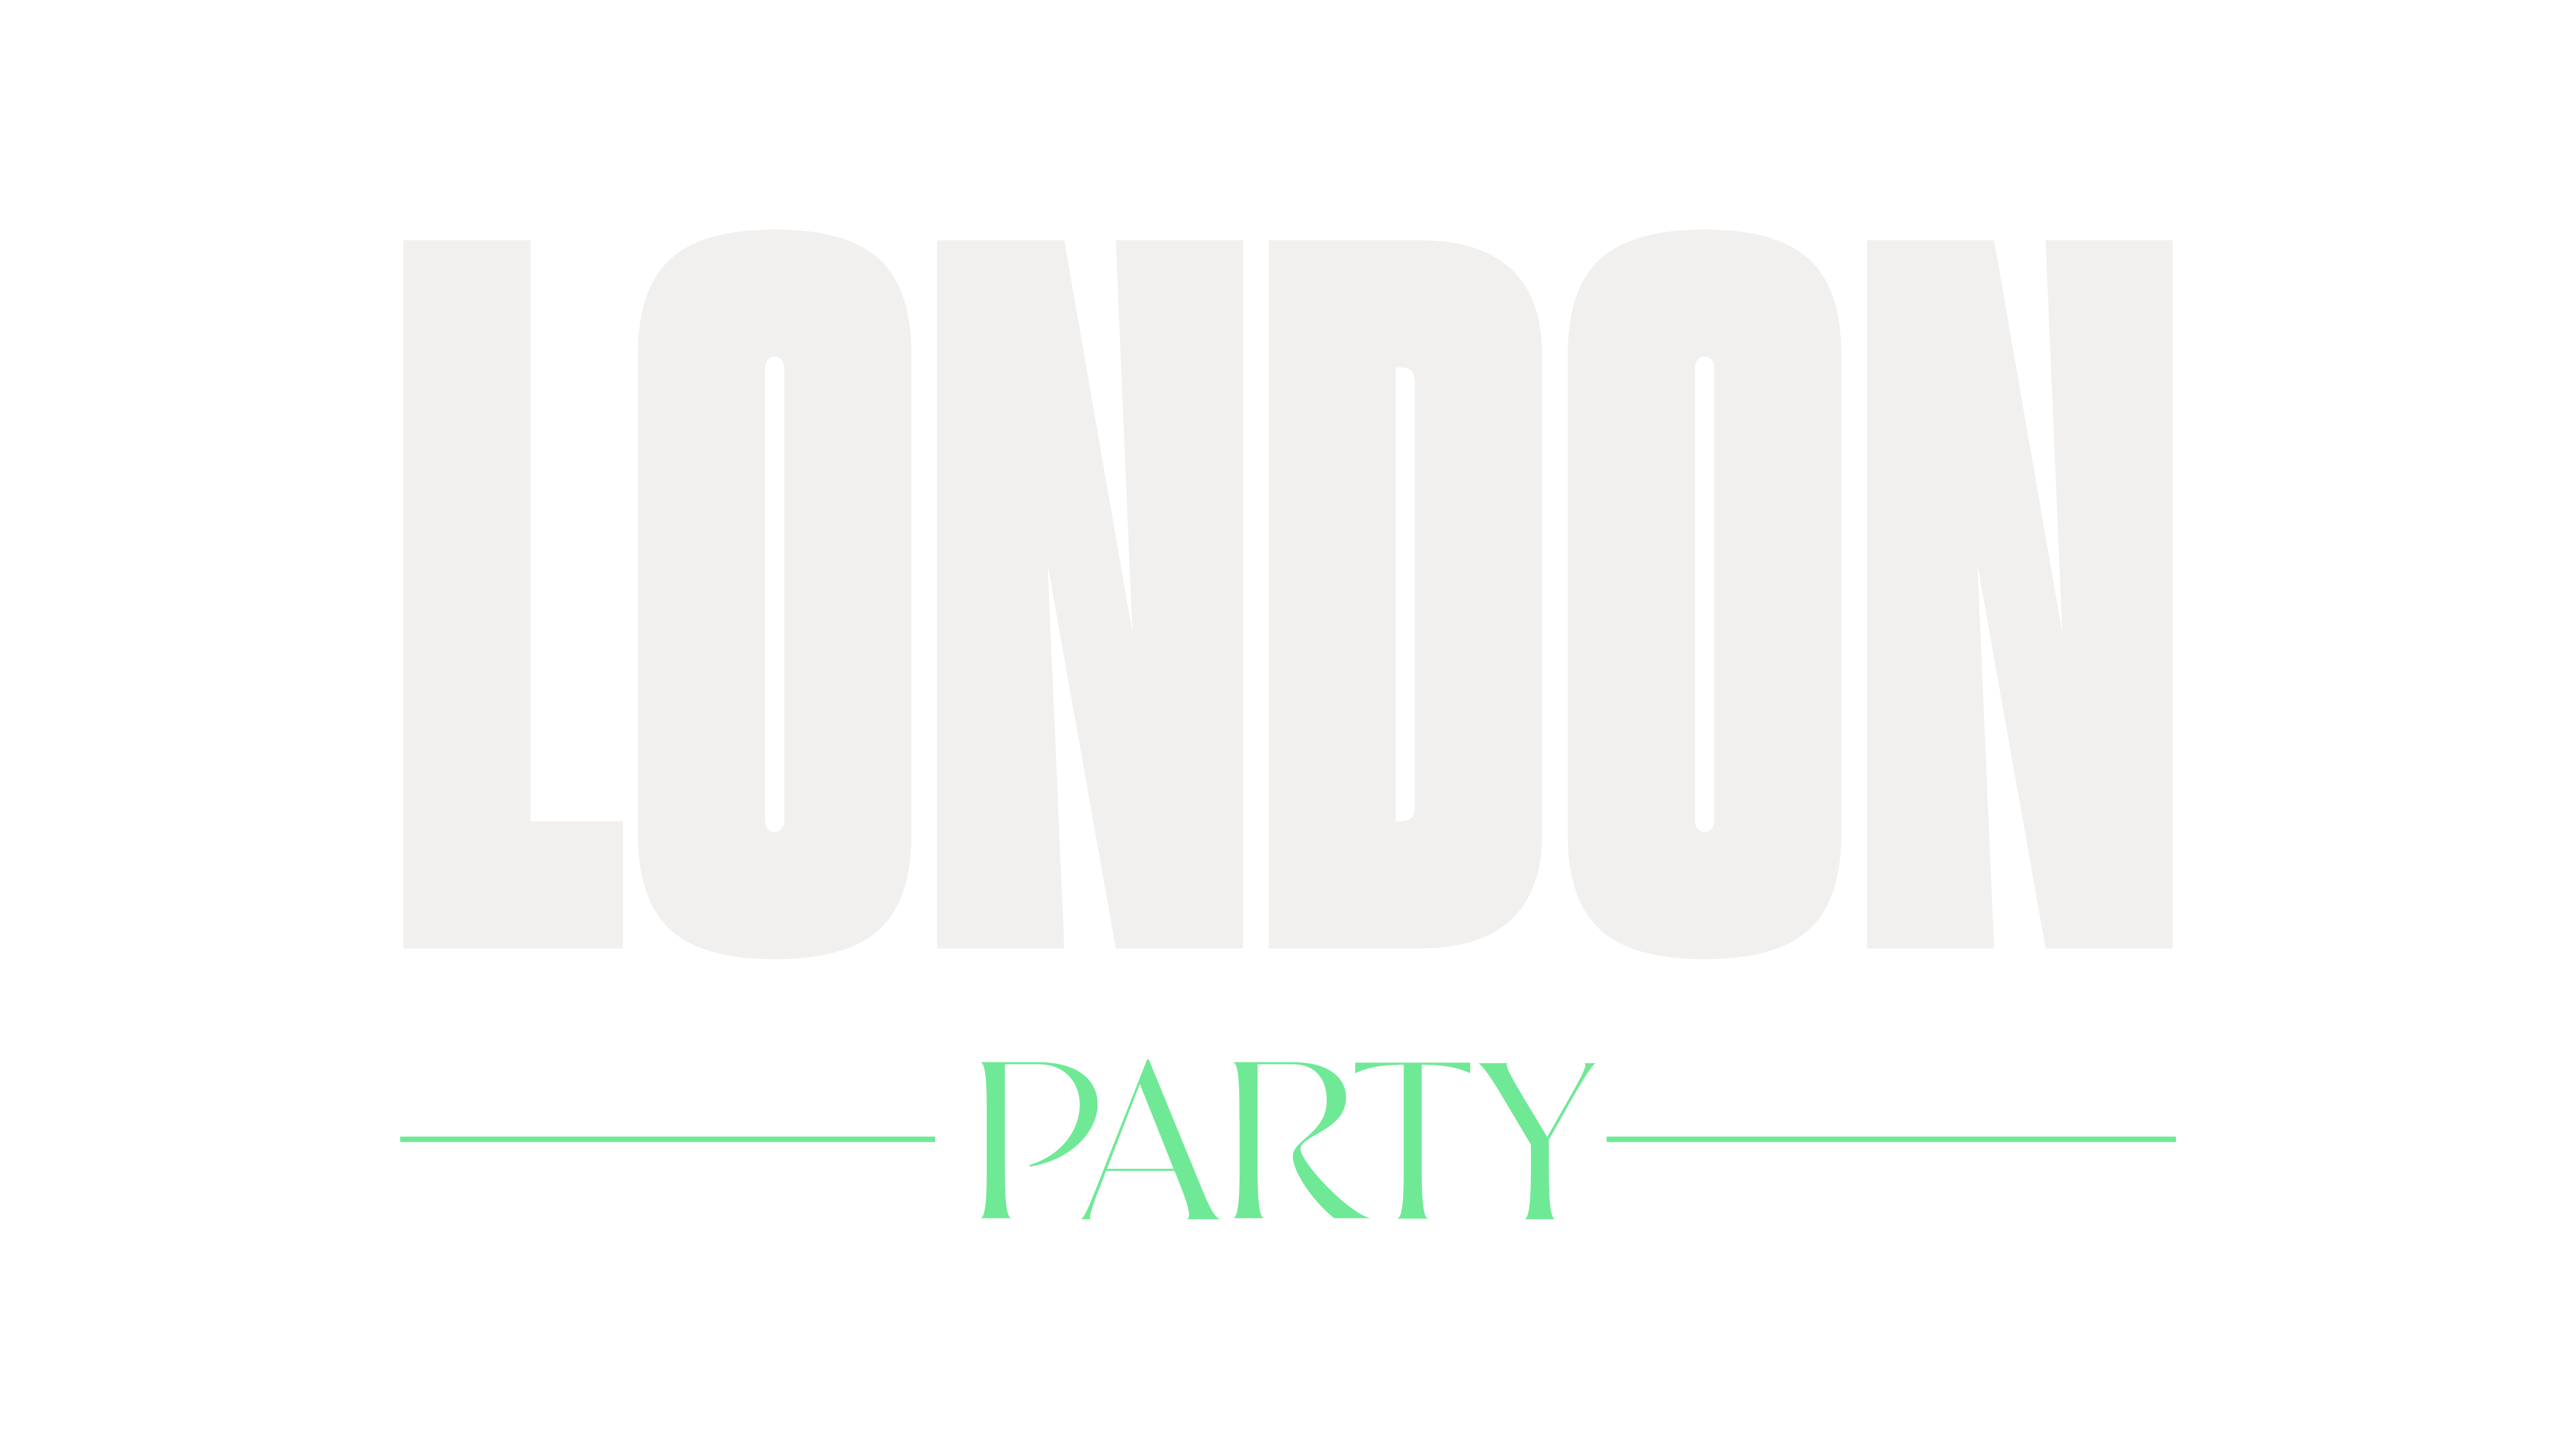 London Party Logo